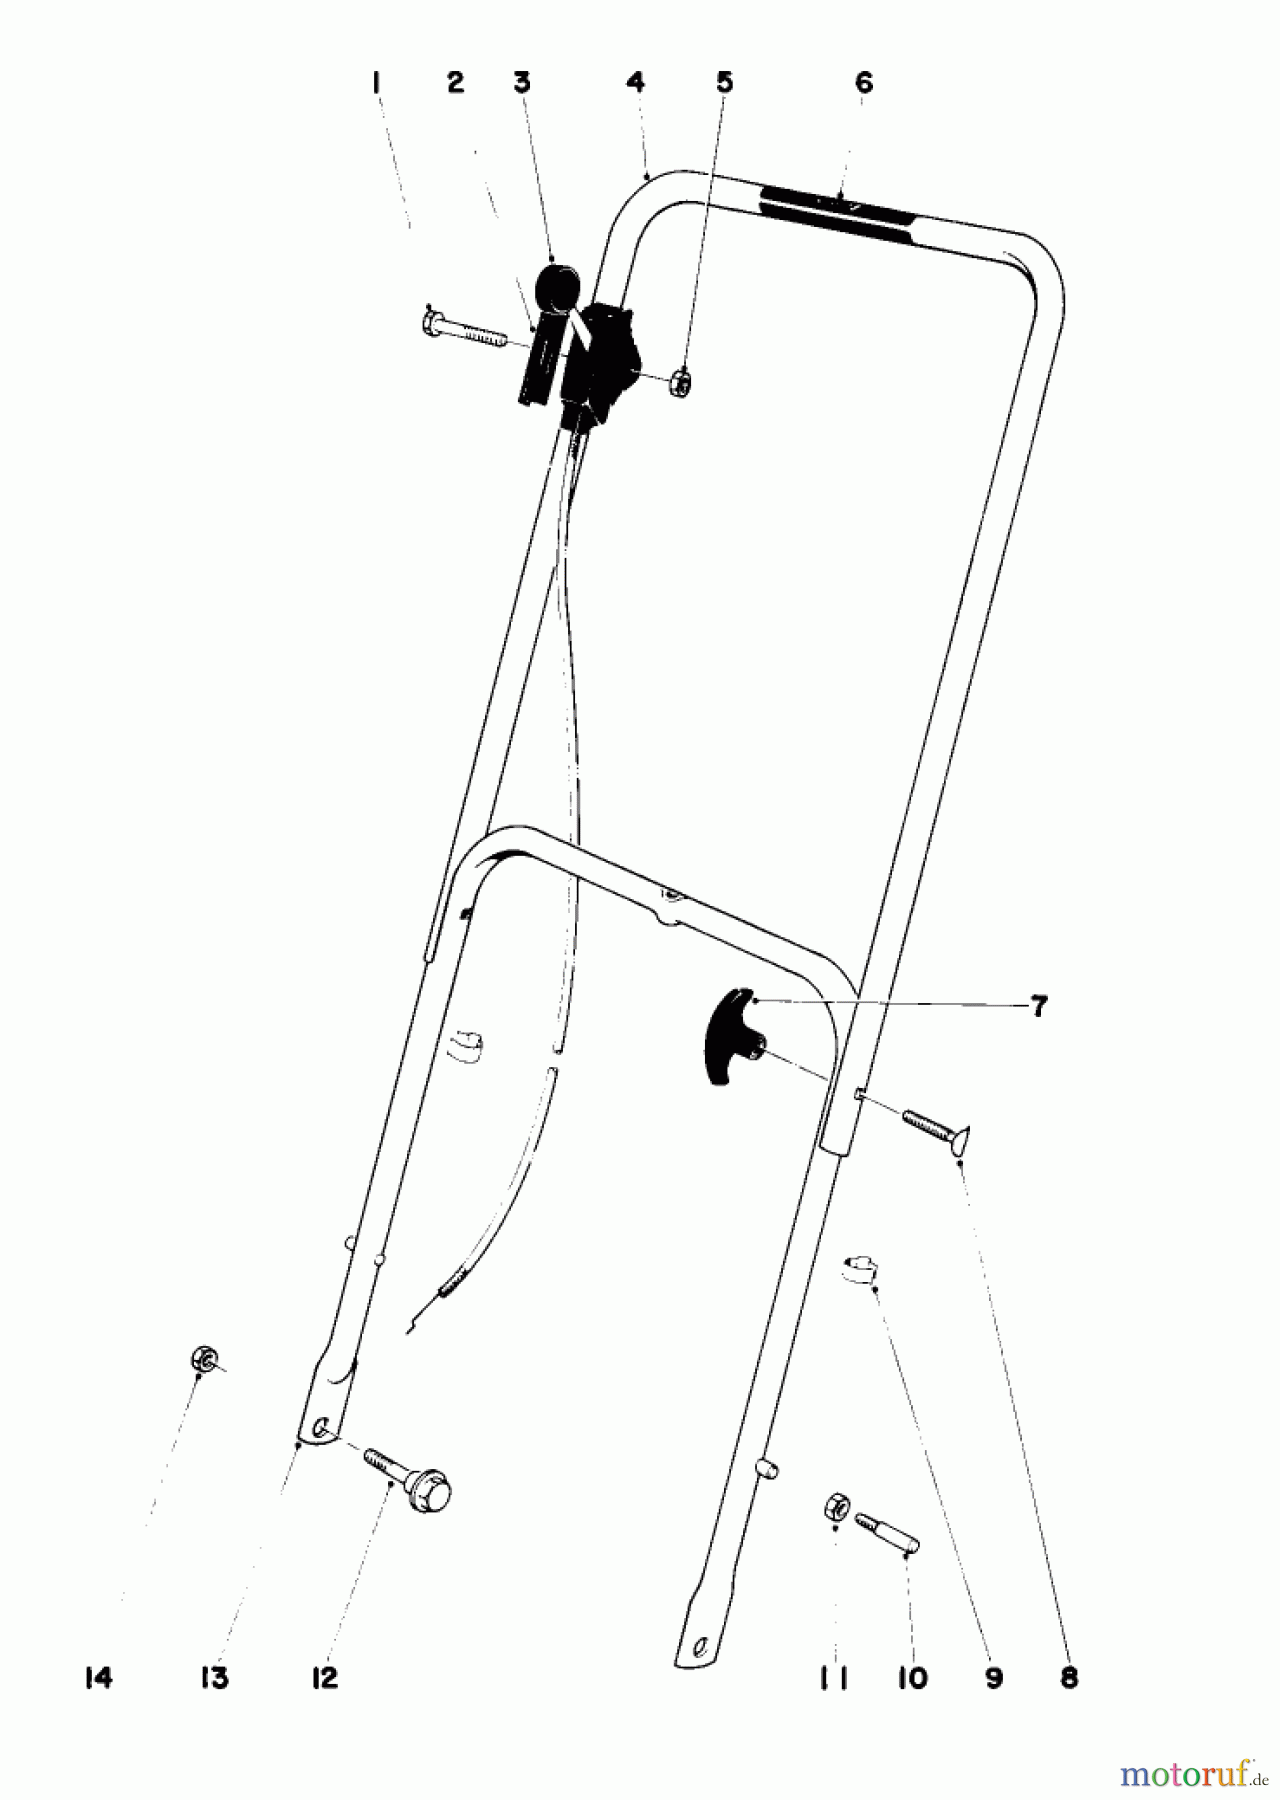  Toro Neu Mowers, Walk-Behind Seite 1 16155 - Toro Whirlwind II Lawnmower, 1979 (9000001-9999999) HANDLE ASSEMBLY MODEL 16067 AND 16155